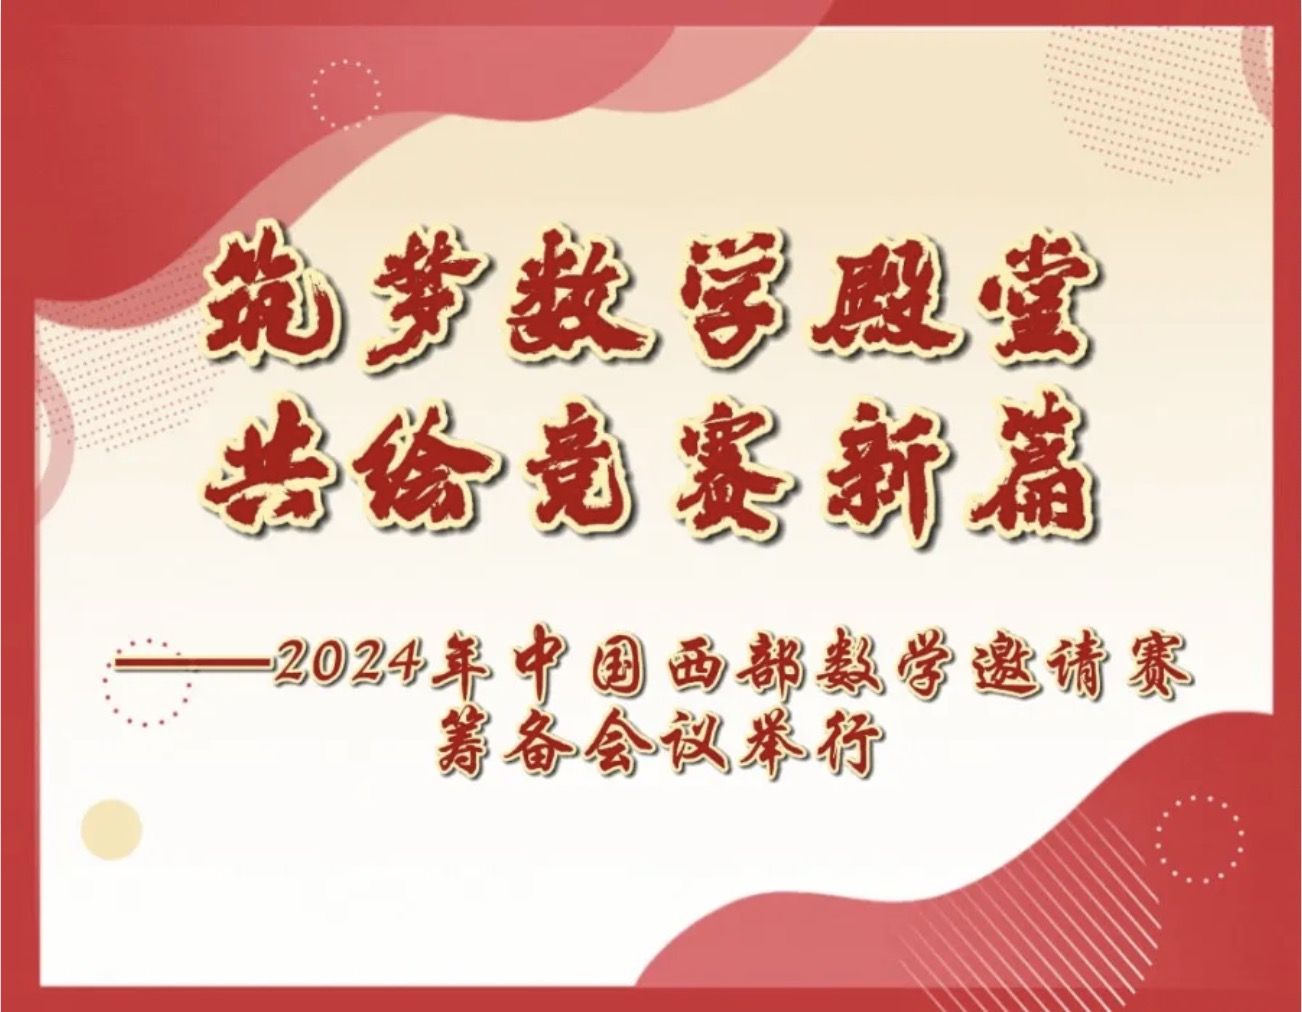 转载：筑梦数学殿堂，共绘竞赛新篇——2024年中国西部数学邀请赛筹备会议举行